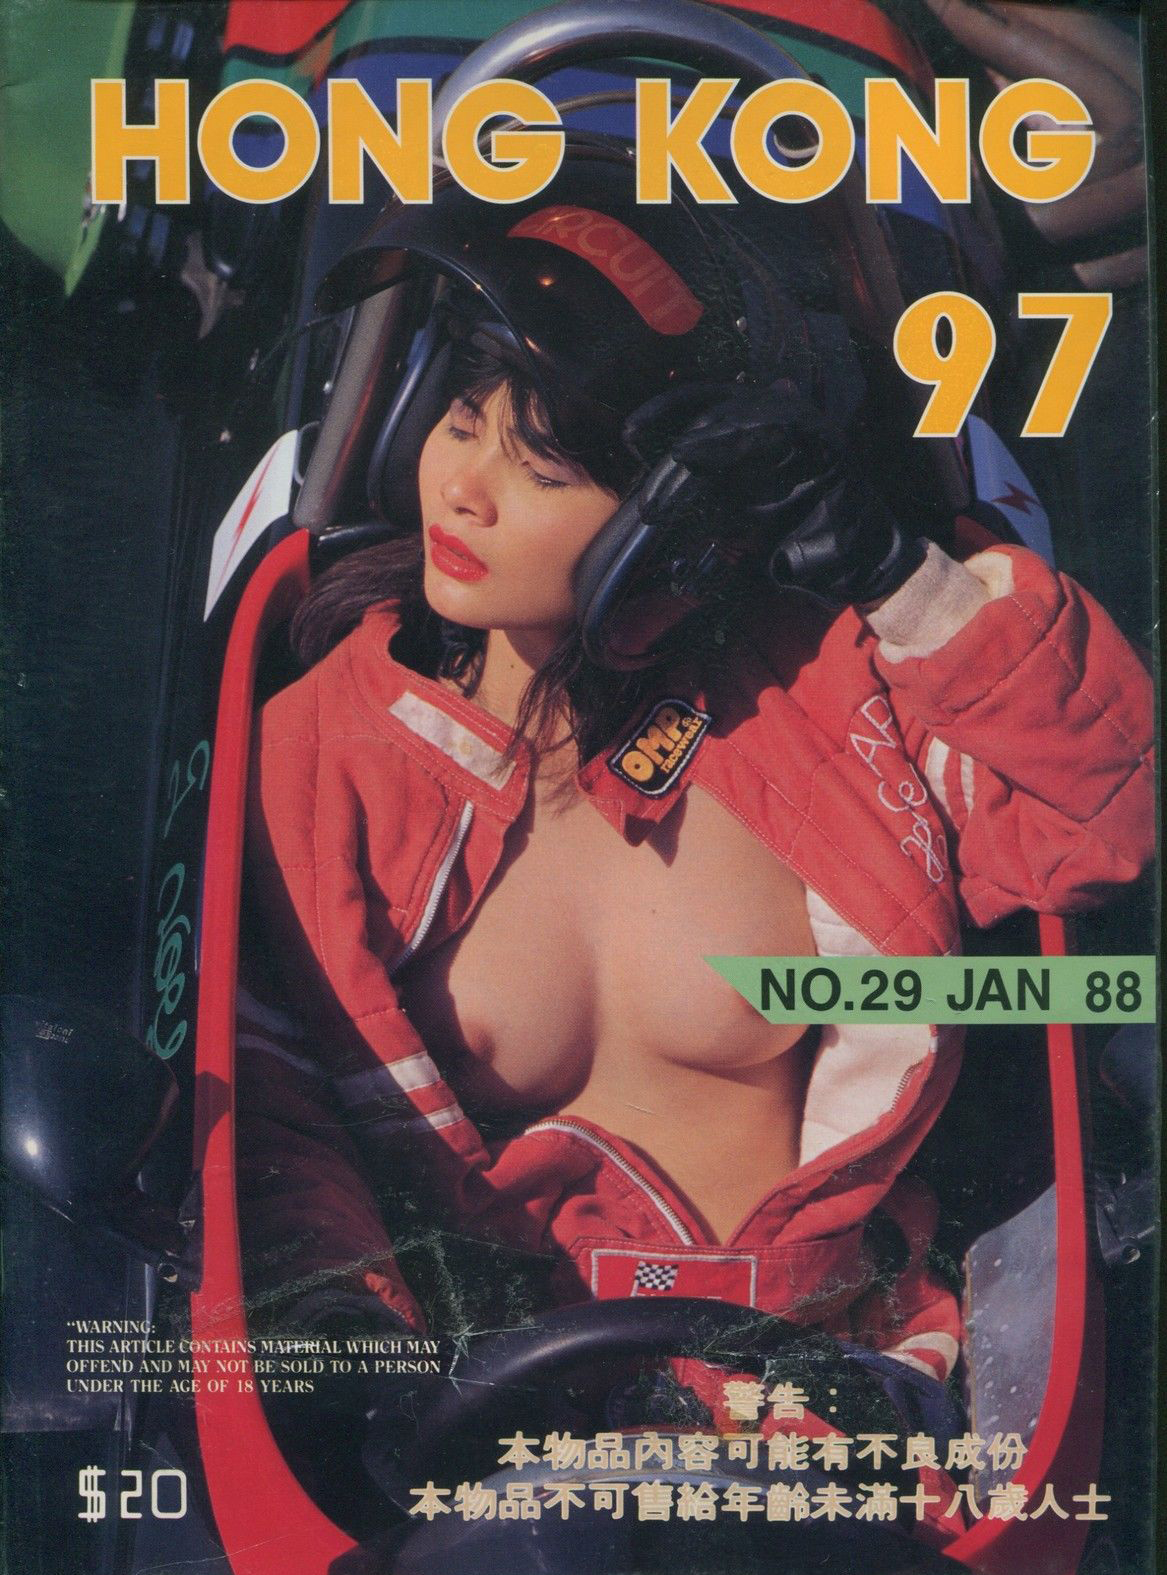 Hong Kong 97 # 29 magazine back issue Hong Kong 97 magizine back copy 